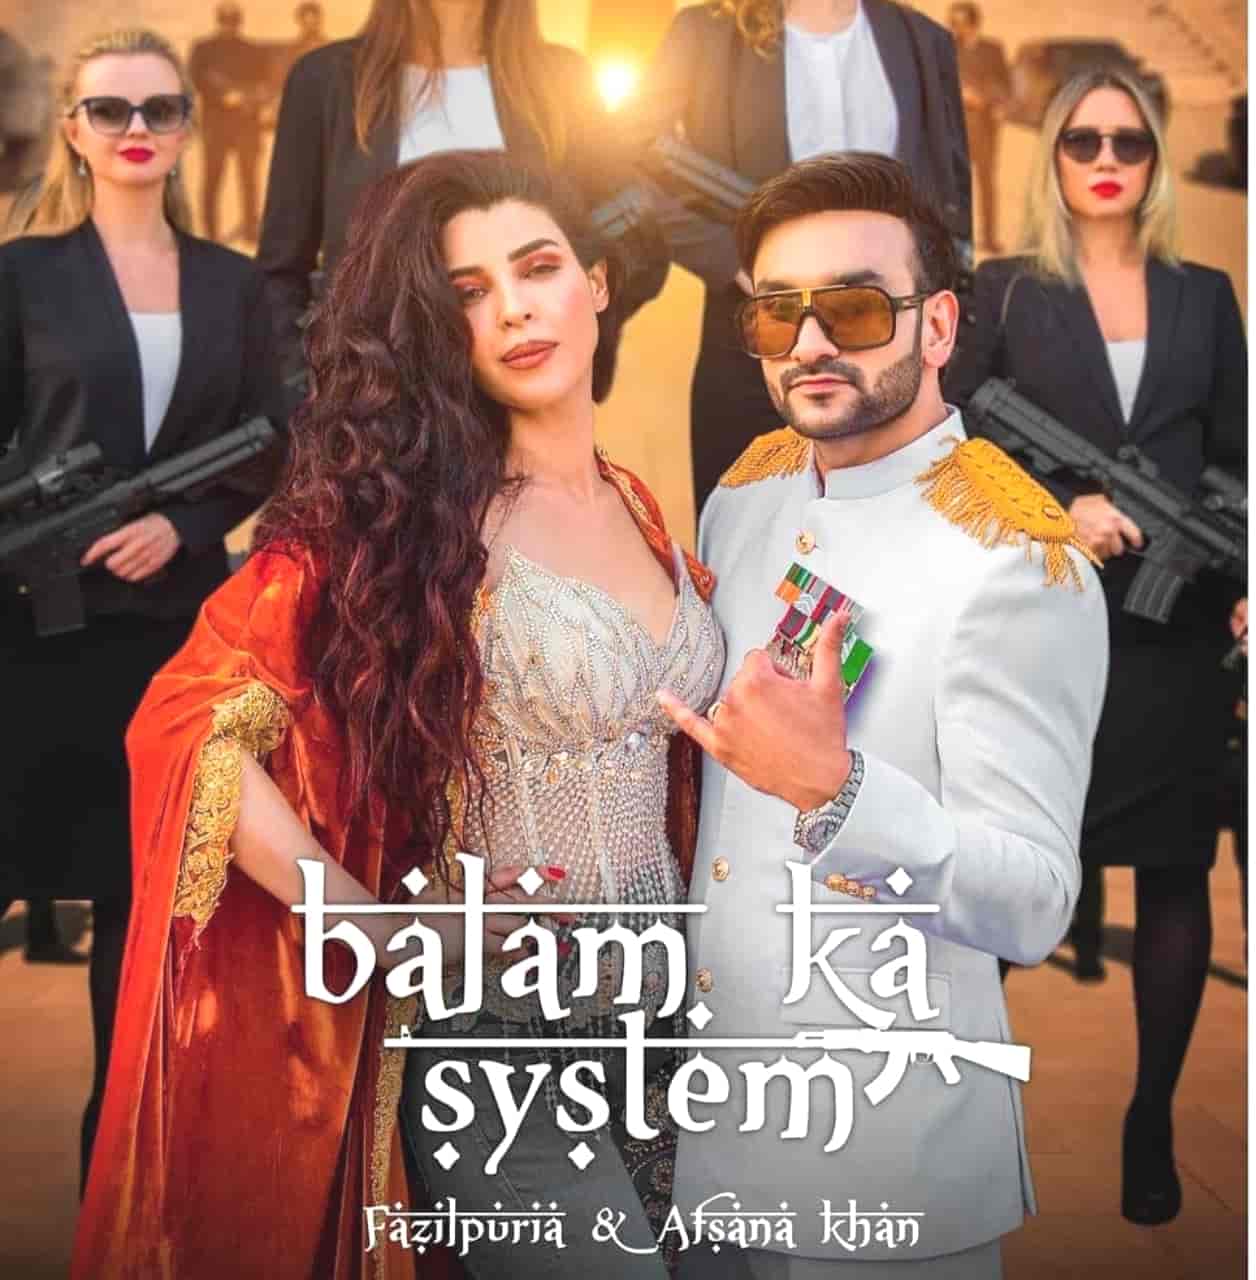 Balam Ka System Haryanvi Rap Song Image Features Fazilpuria and Afsana Khan